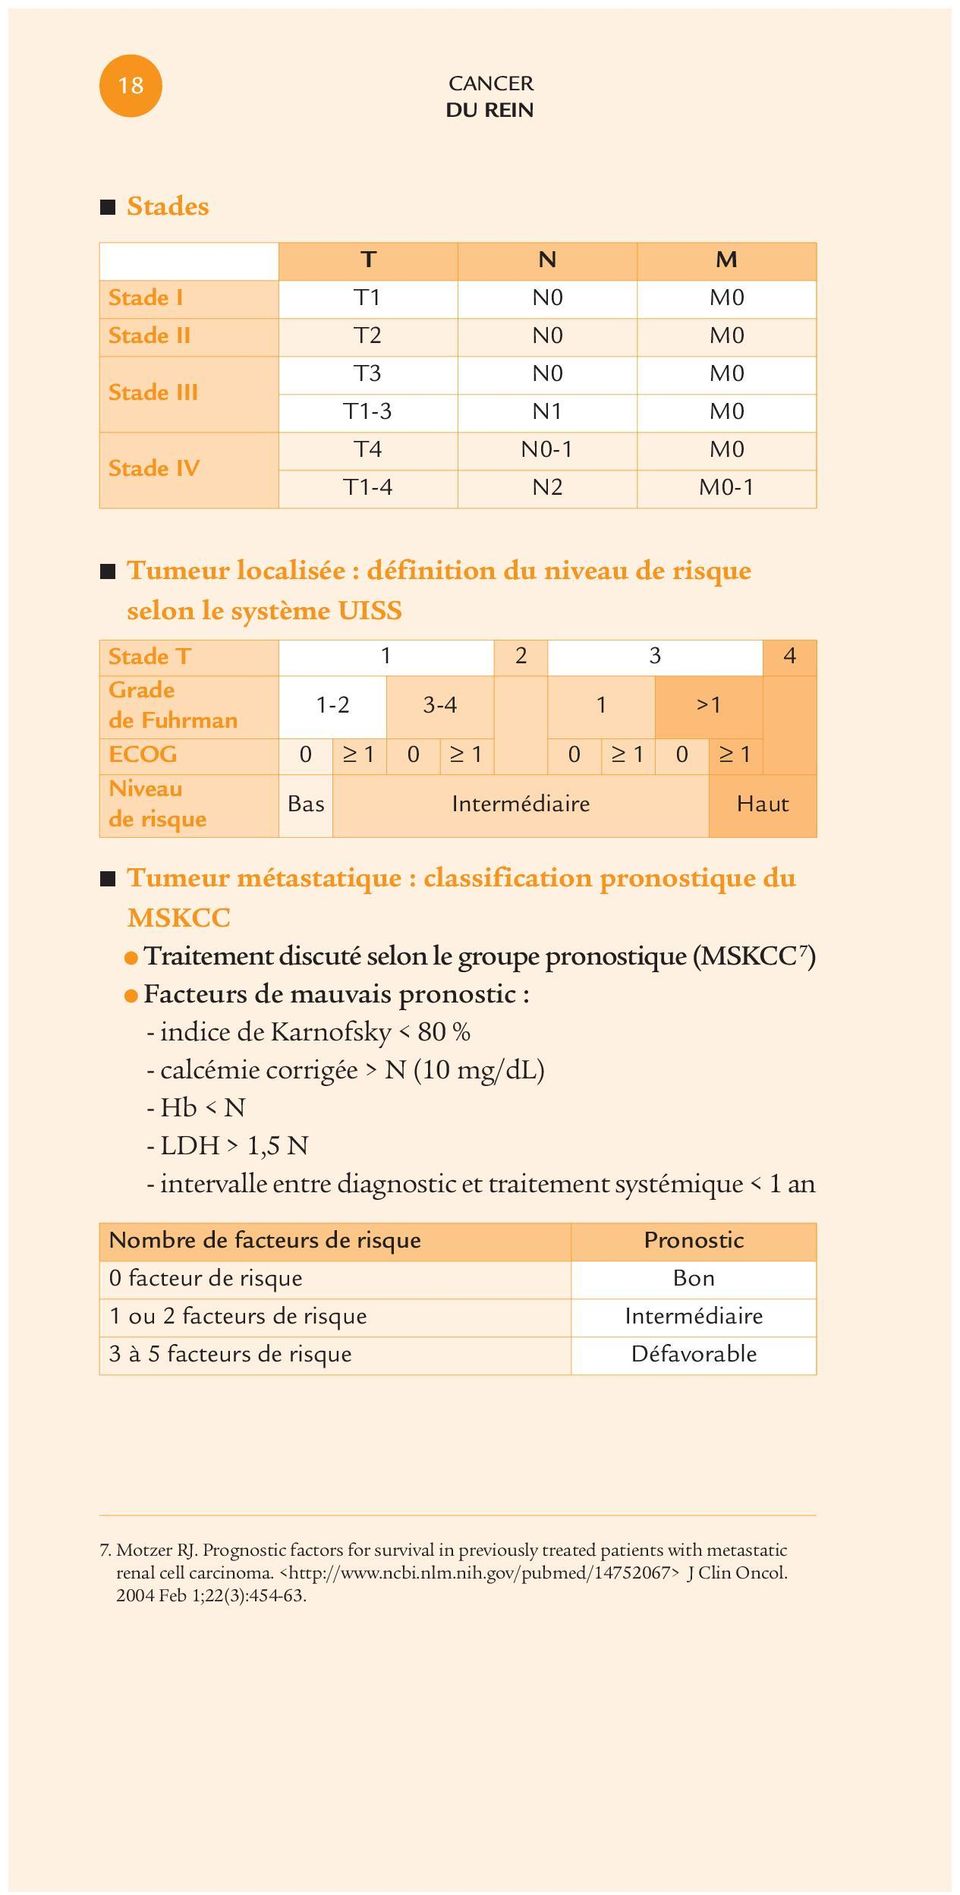 groupe pronostique (MSKCC 7 ) Facteurs de mauvais pronostic : - indice de Karnofsky < 80 % - calcémie corrigée > N (10 mg/dl) - Hb < N - LDH > 1,5 N - intervalle entre diagnostic et traitement